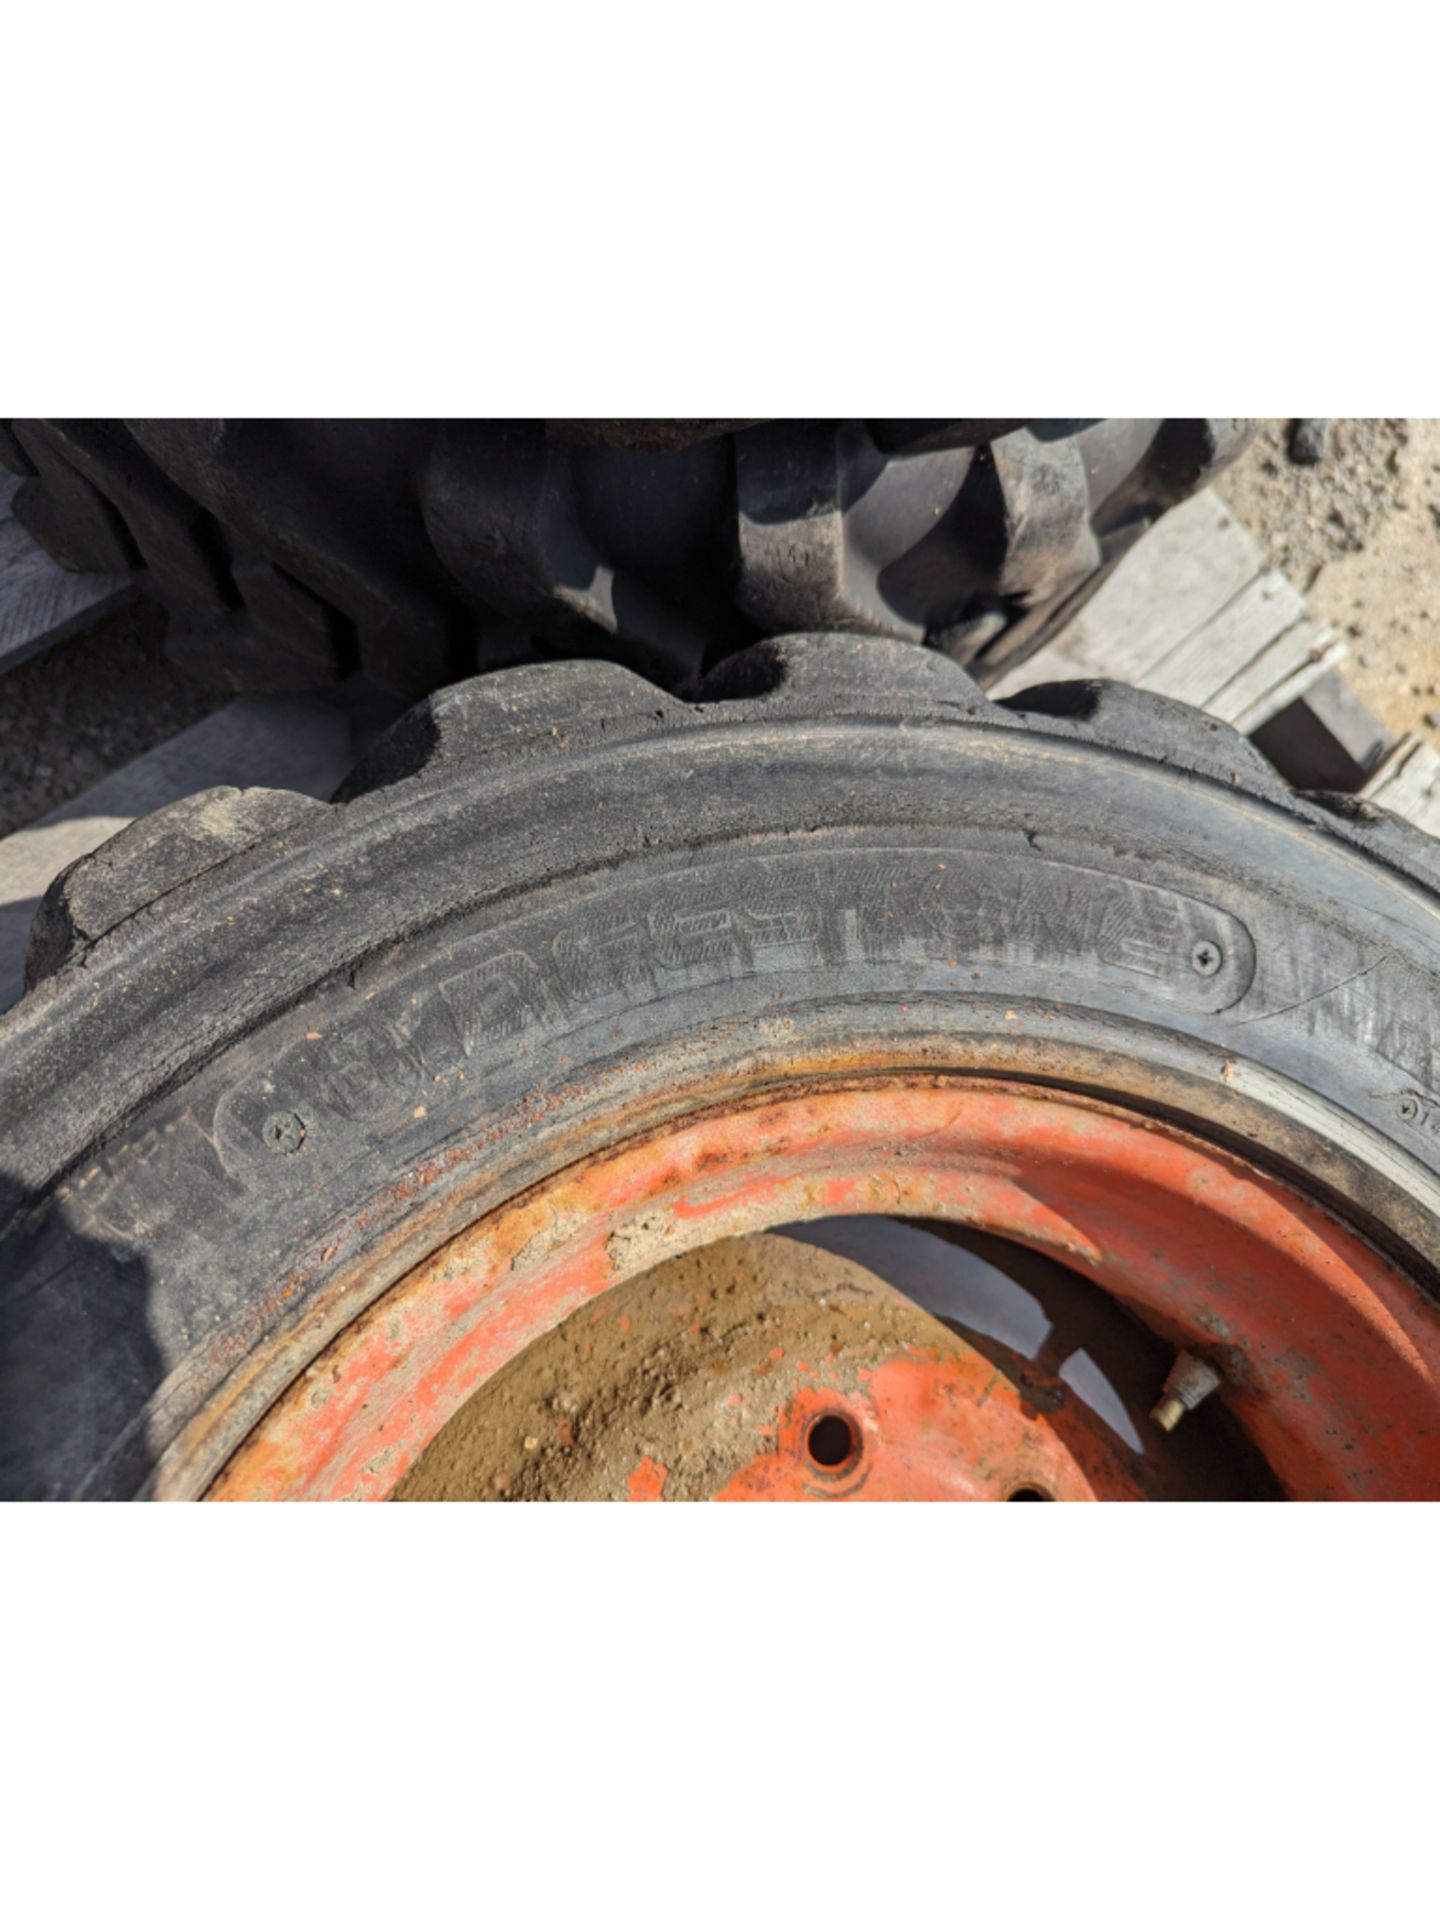 4 10-16.5 Skid Steer Tires & Rims - Image 6 of 7